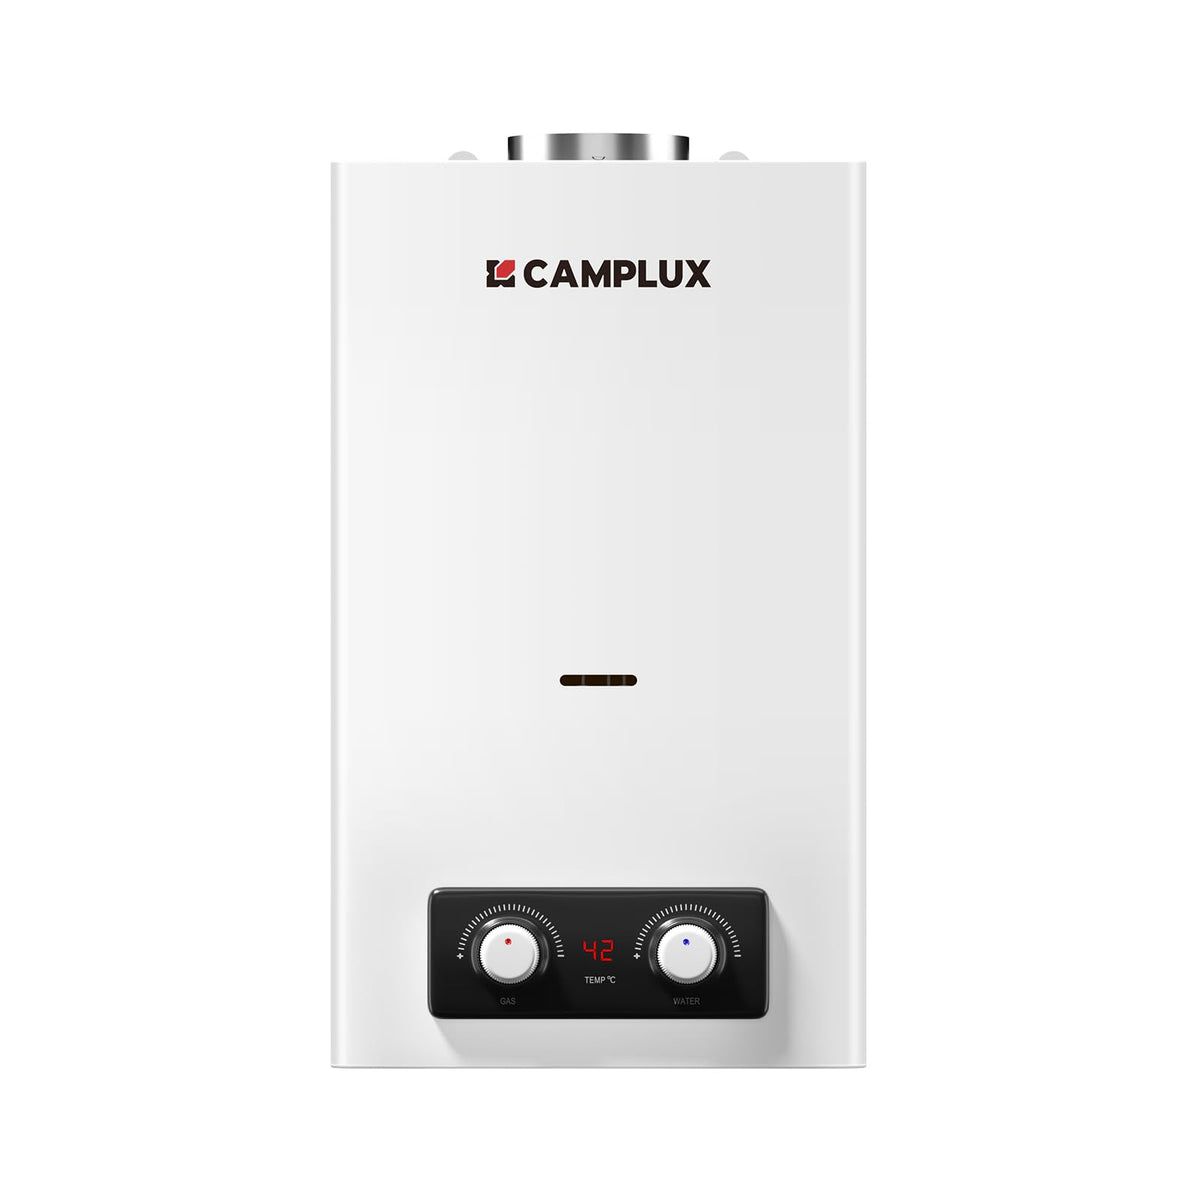 CAMPLUX BD300-DE 11 Liter Gasdurchlauferhitzer Indoor, Gasdusche Niedrige NOx/ErP für Küche/Bad, 50mbar, LPG, 3V, 22kW [Energieklasse A]